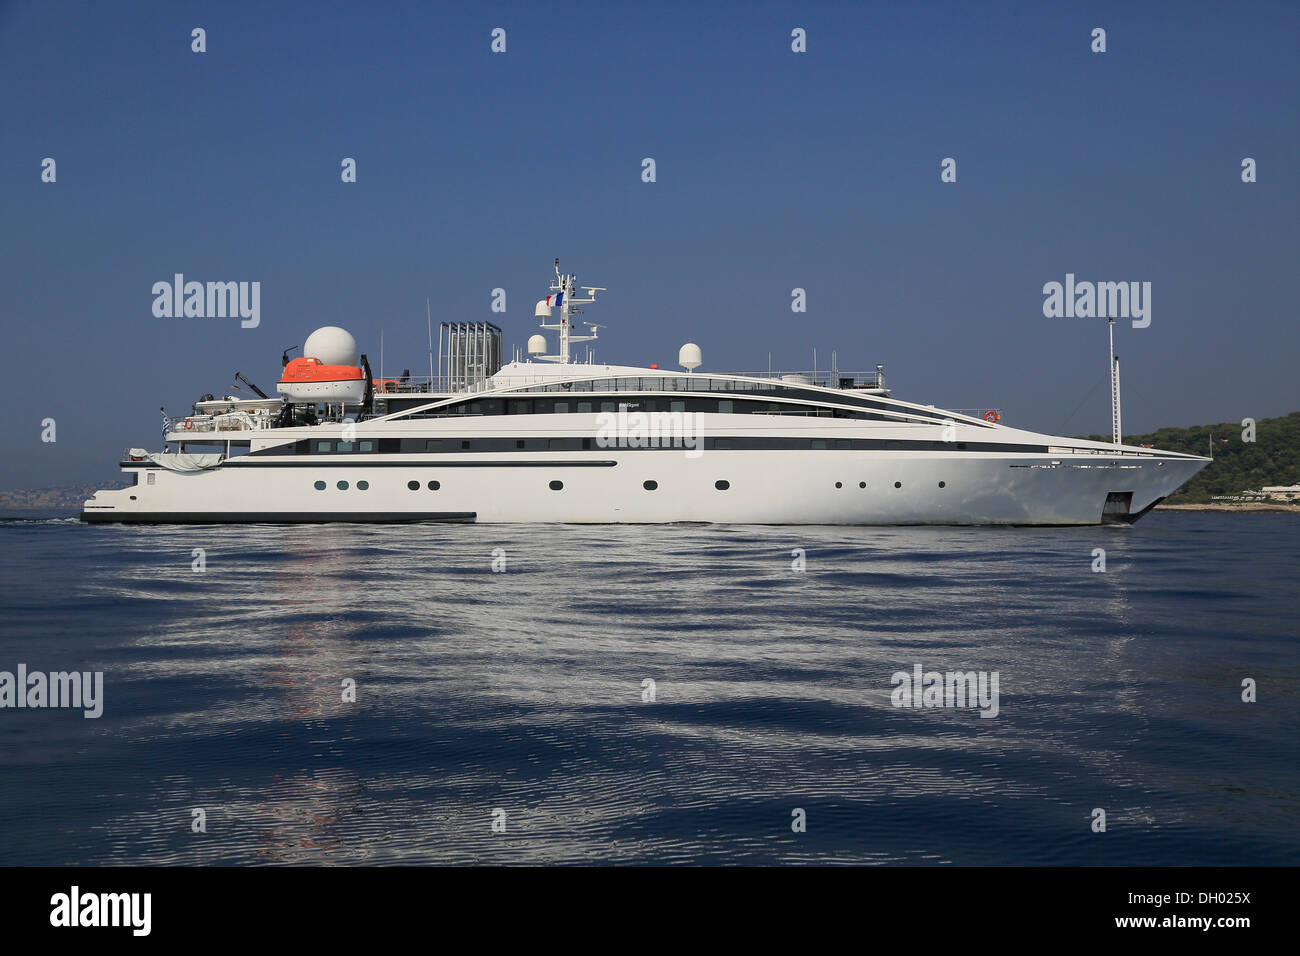 RM elegante, un cruiser costruito da Kanellos Bros, lunghezza: 72.48 m, costruito nel 2005, off Cap Ferrat, Costa Azzurra, Francia Foto Stock